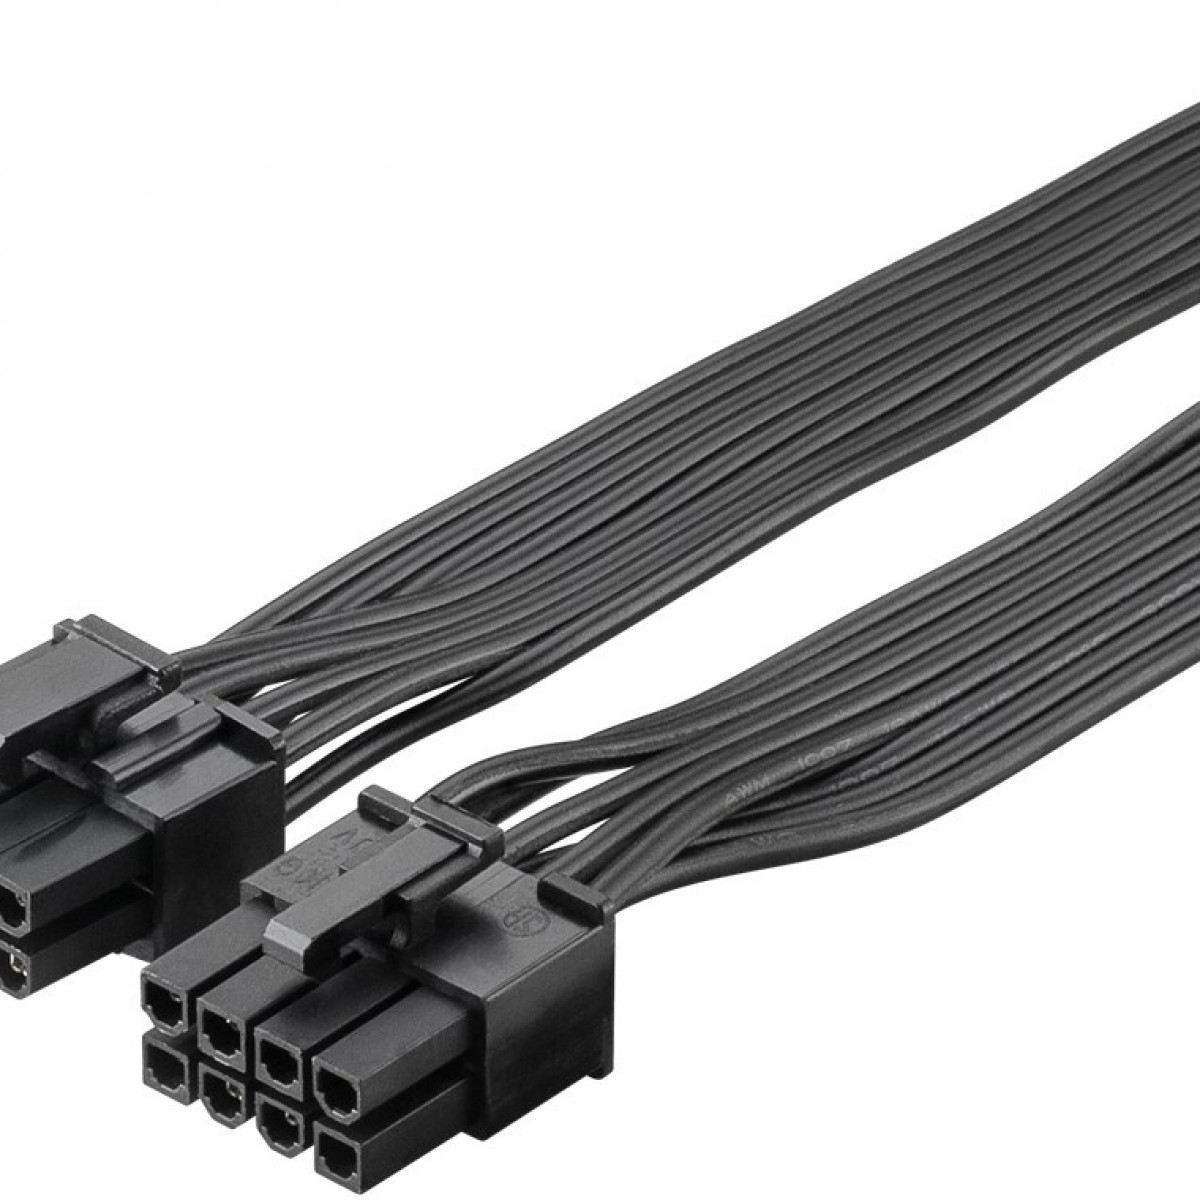 GOOBAY Netzteil-Kabel PCIe 8-Pin-Stecker auf 6+2-Stecker Dual für Stromkabel